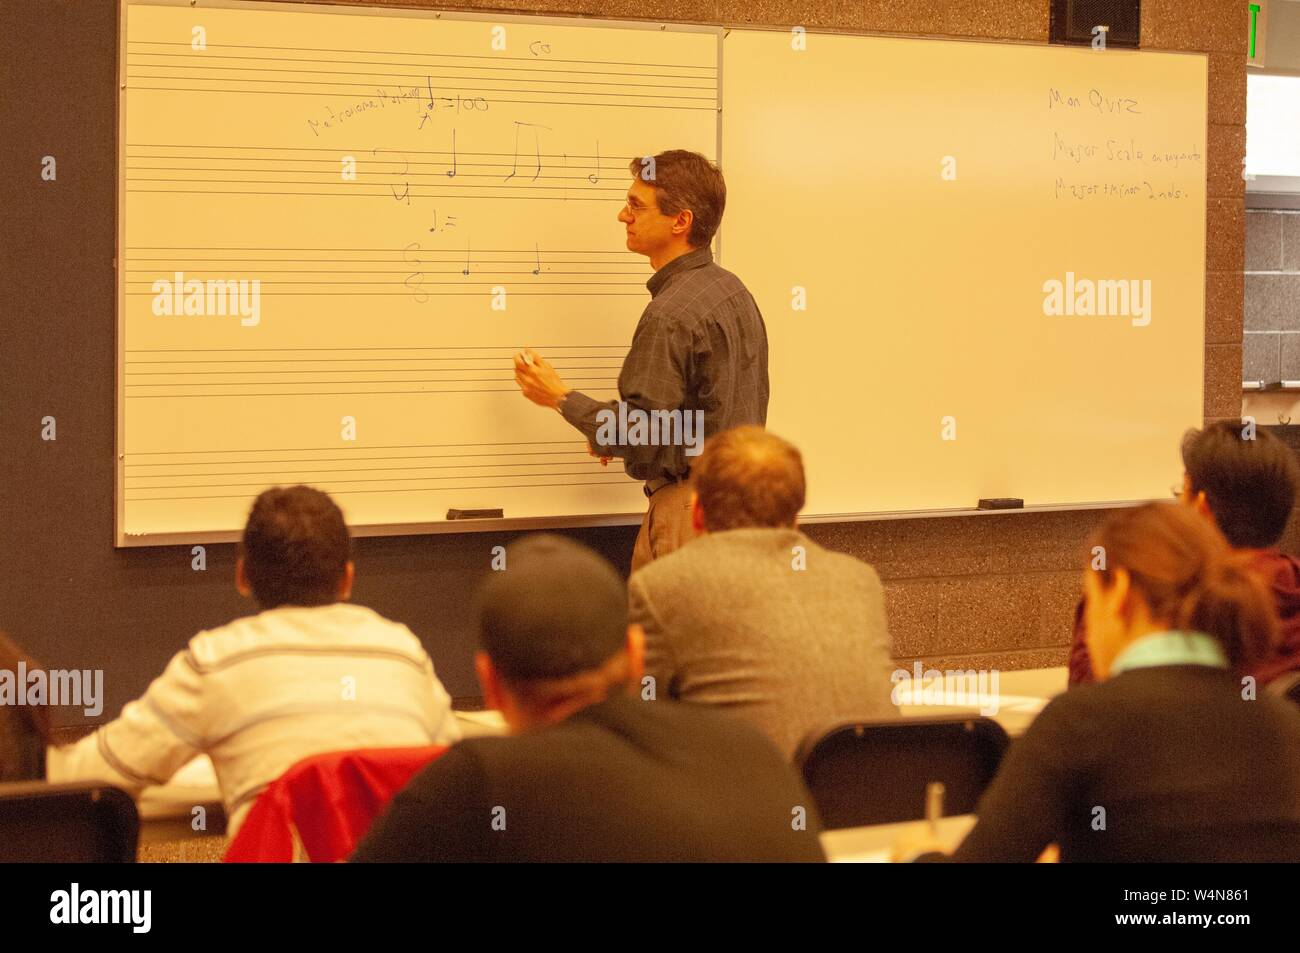 Teilnehmer ein Ausbilder musikalische Notationen auf eine Tafel schreiben, in einem Klassenzimmer an der Mattin Center, an der Johns Hopkins Universität, Baltimore, Maryland, 8. Februar 2006. Vom Homewood Sammlung Fotografie. () Stockfoto